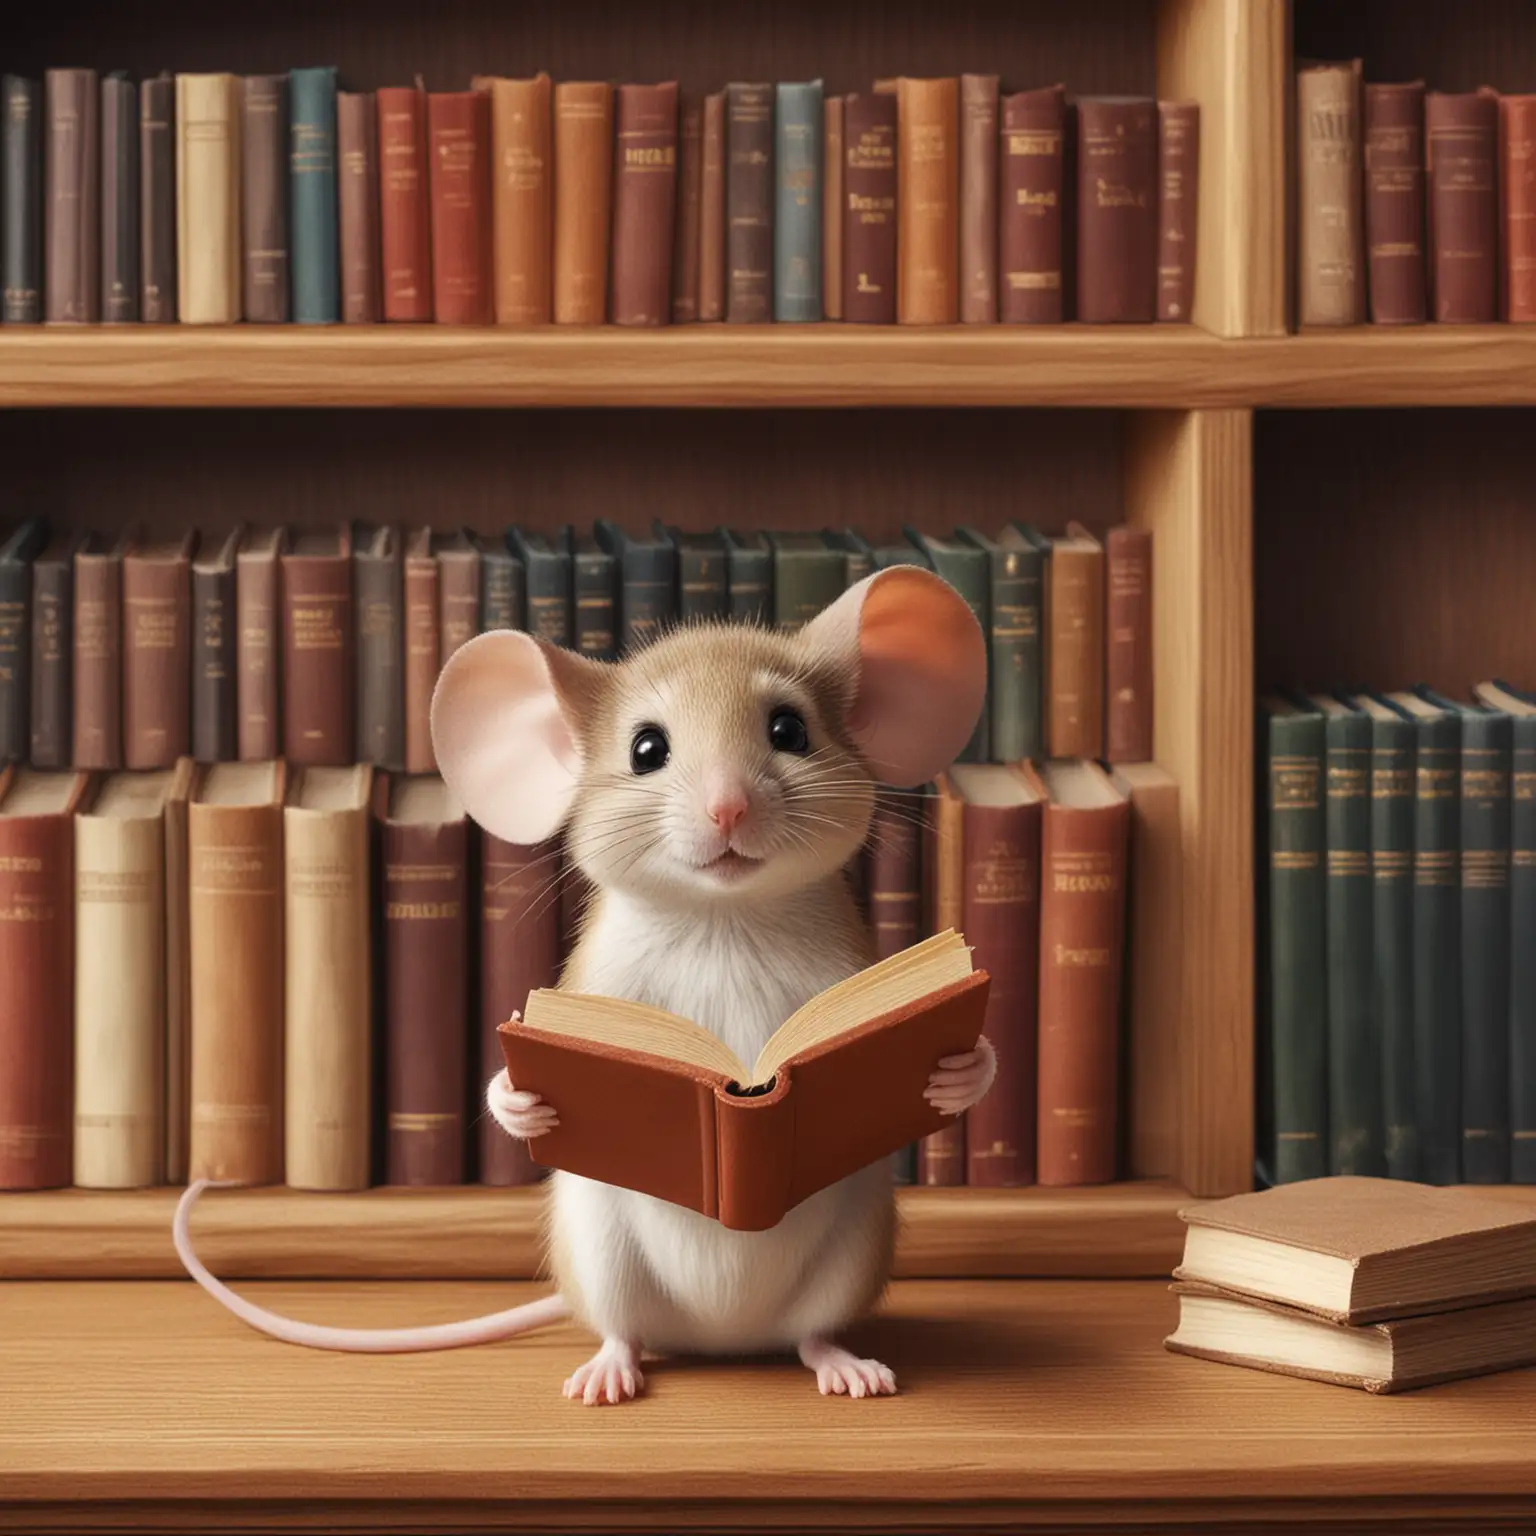 Το ποντικάκι βρίσκεται μπροστά από ένα ράφι με βιβλία και διαβάζει